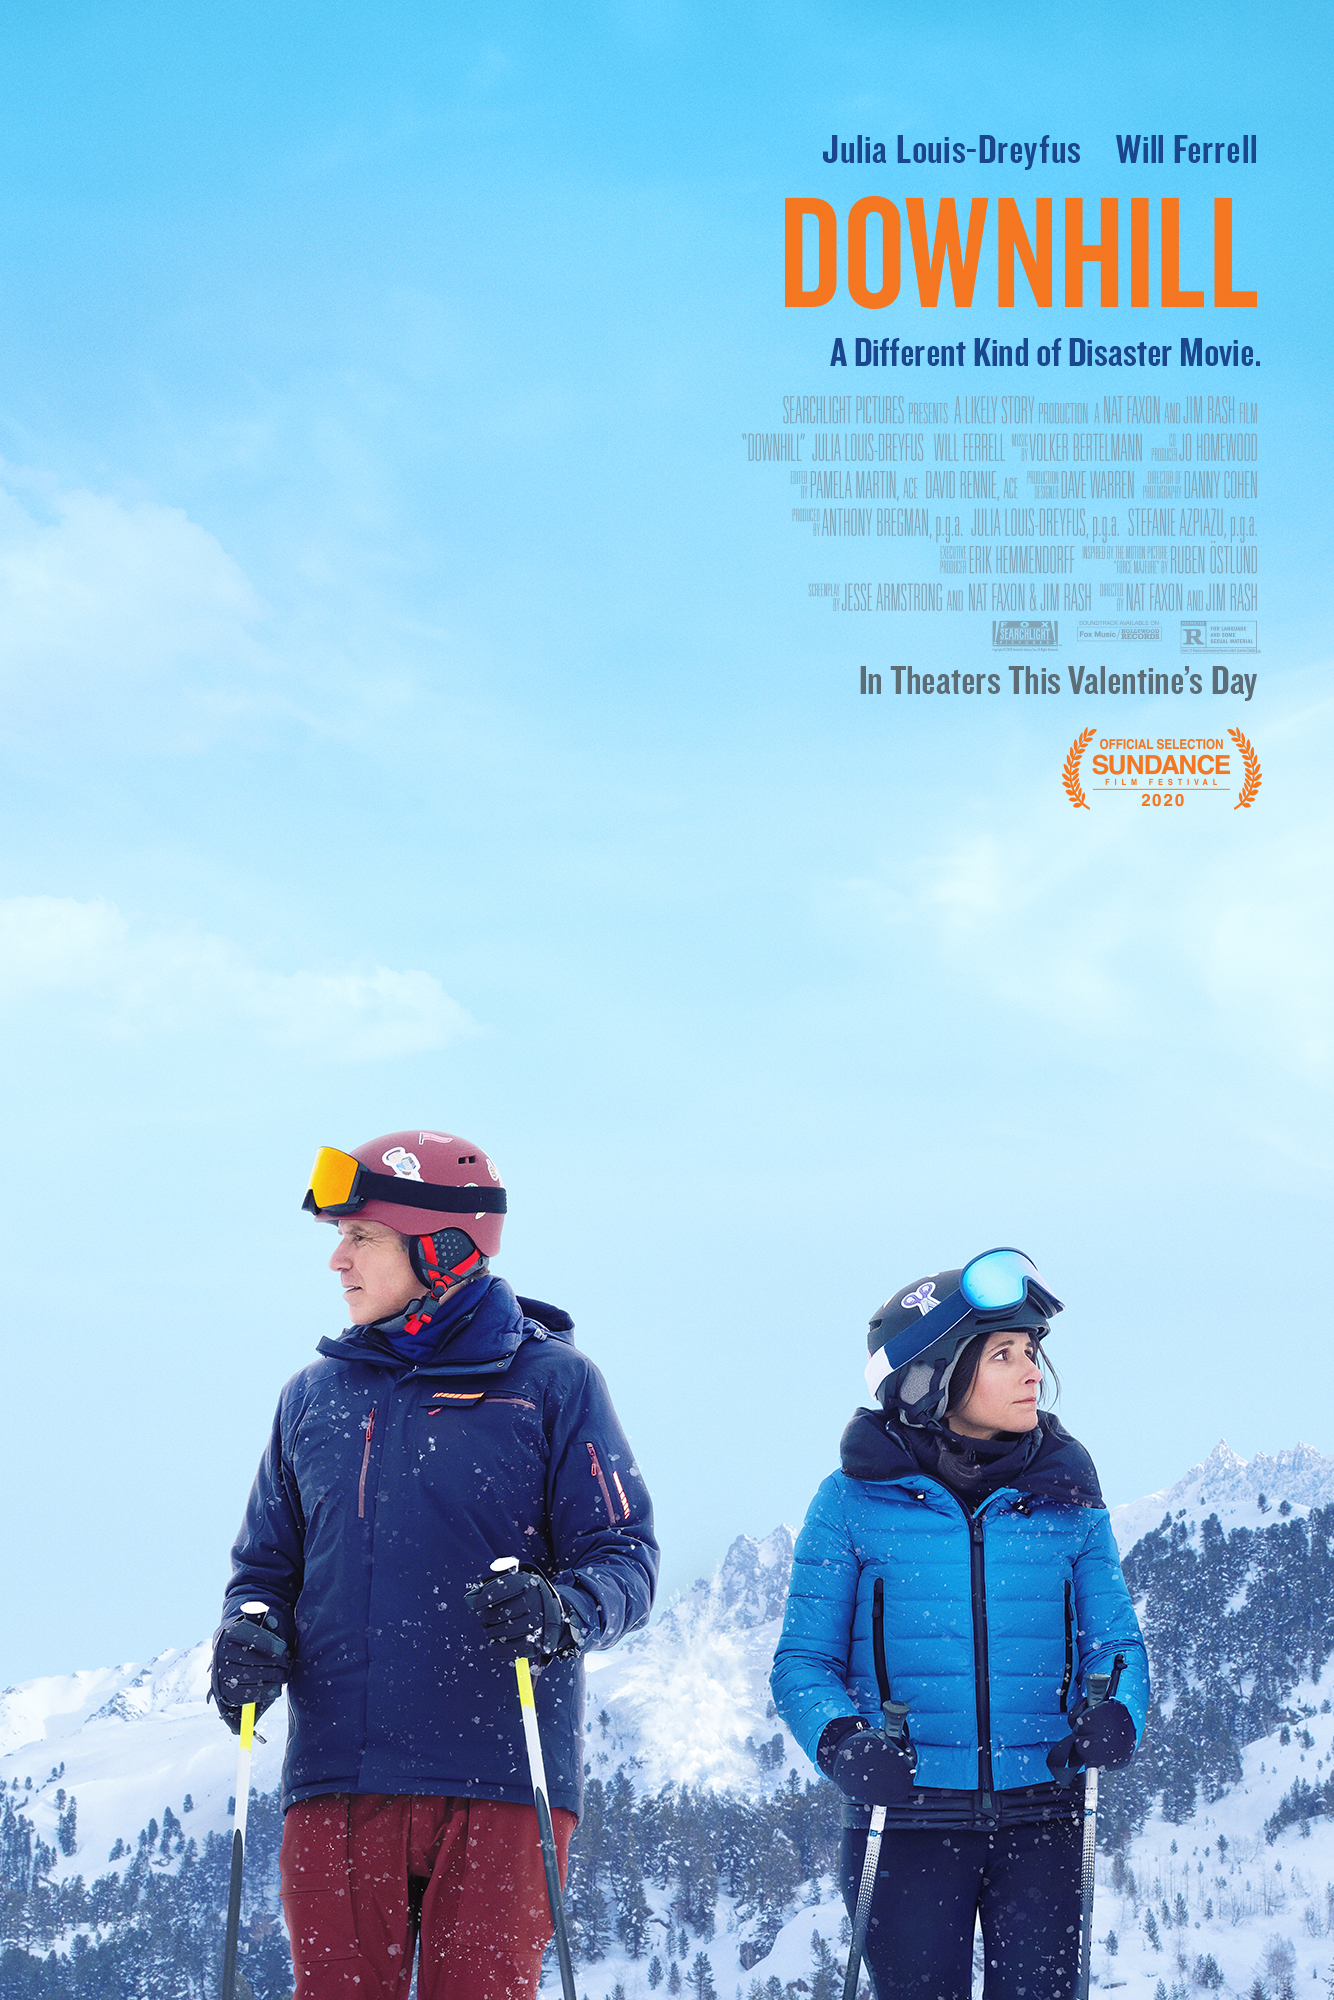 Downhill (2020) ชีวิตของเรา มันยิ่งกว่าหิมะถล่ม Julia Louis-Dreyfus